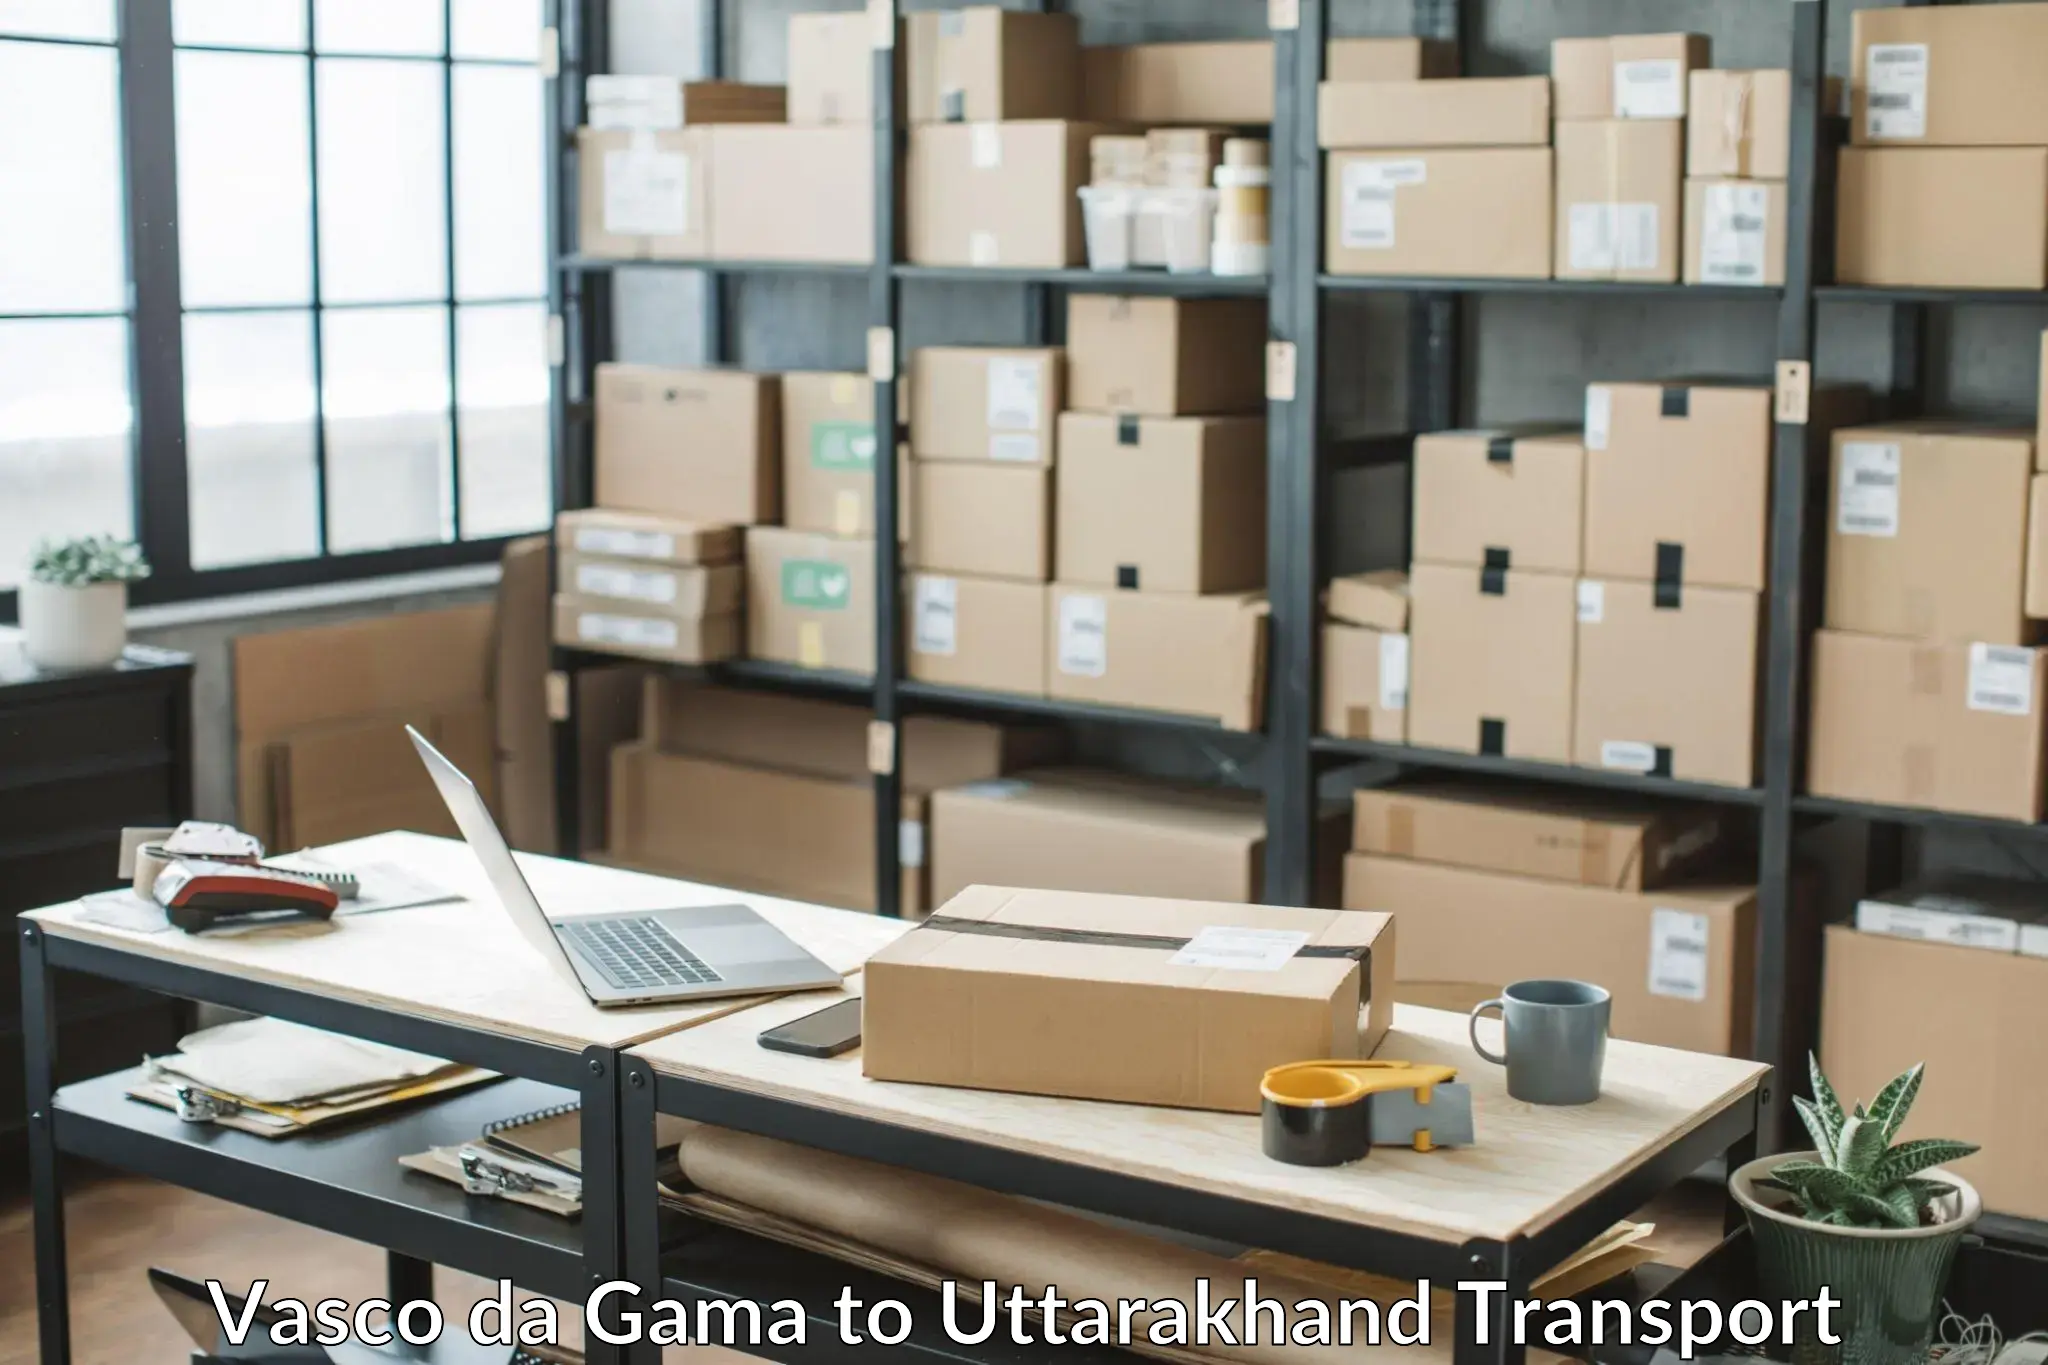 Transport shared services Vasco da Gama to Uttarakhand